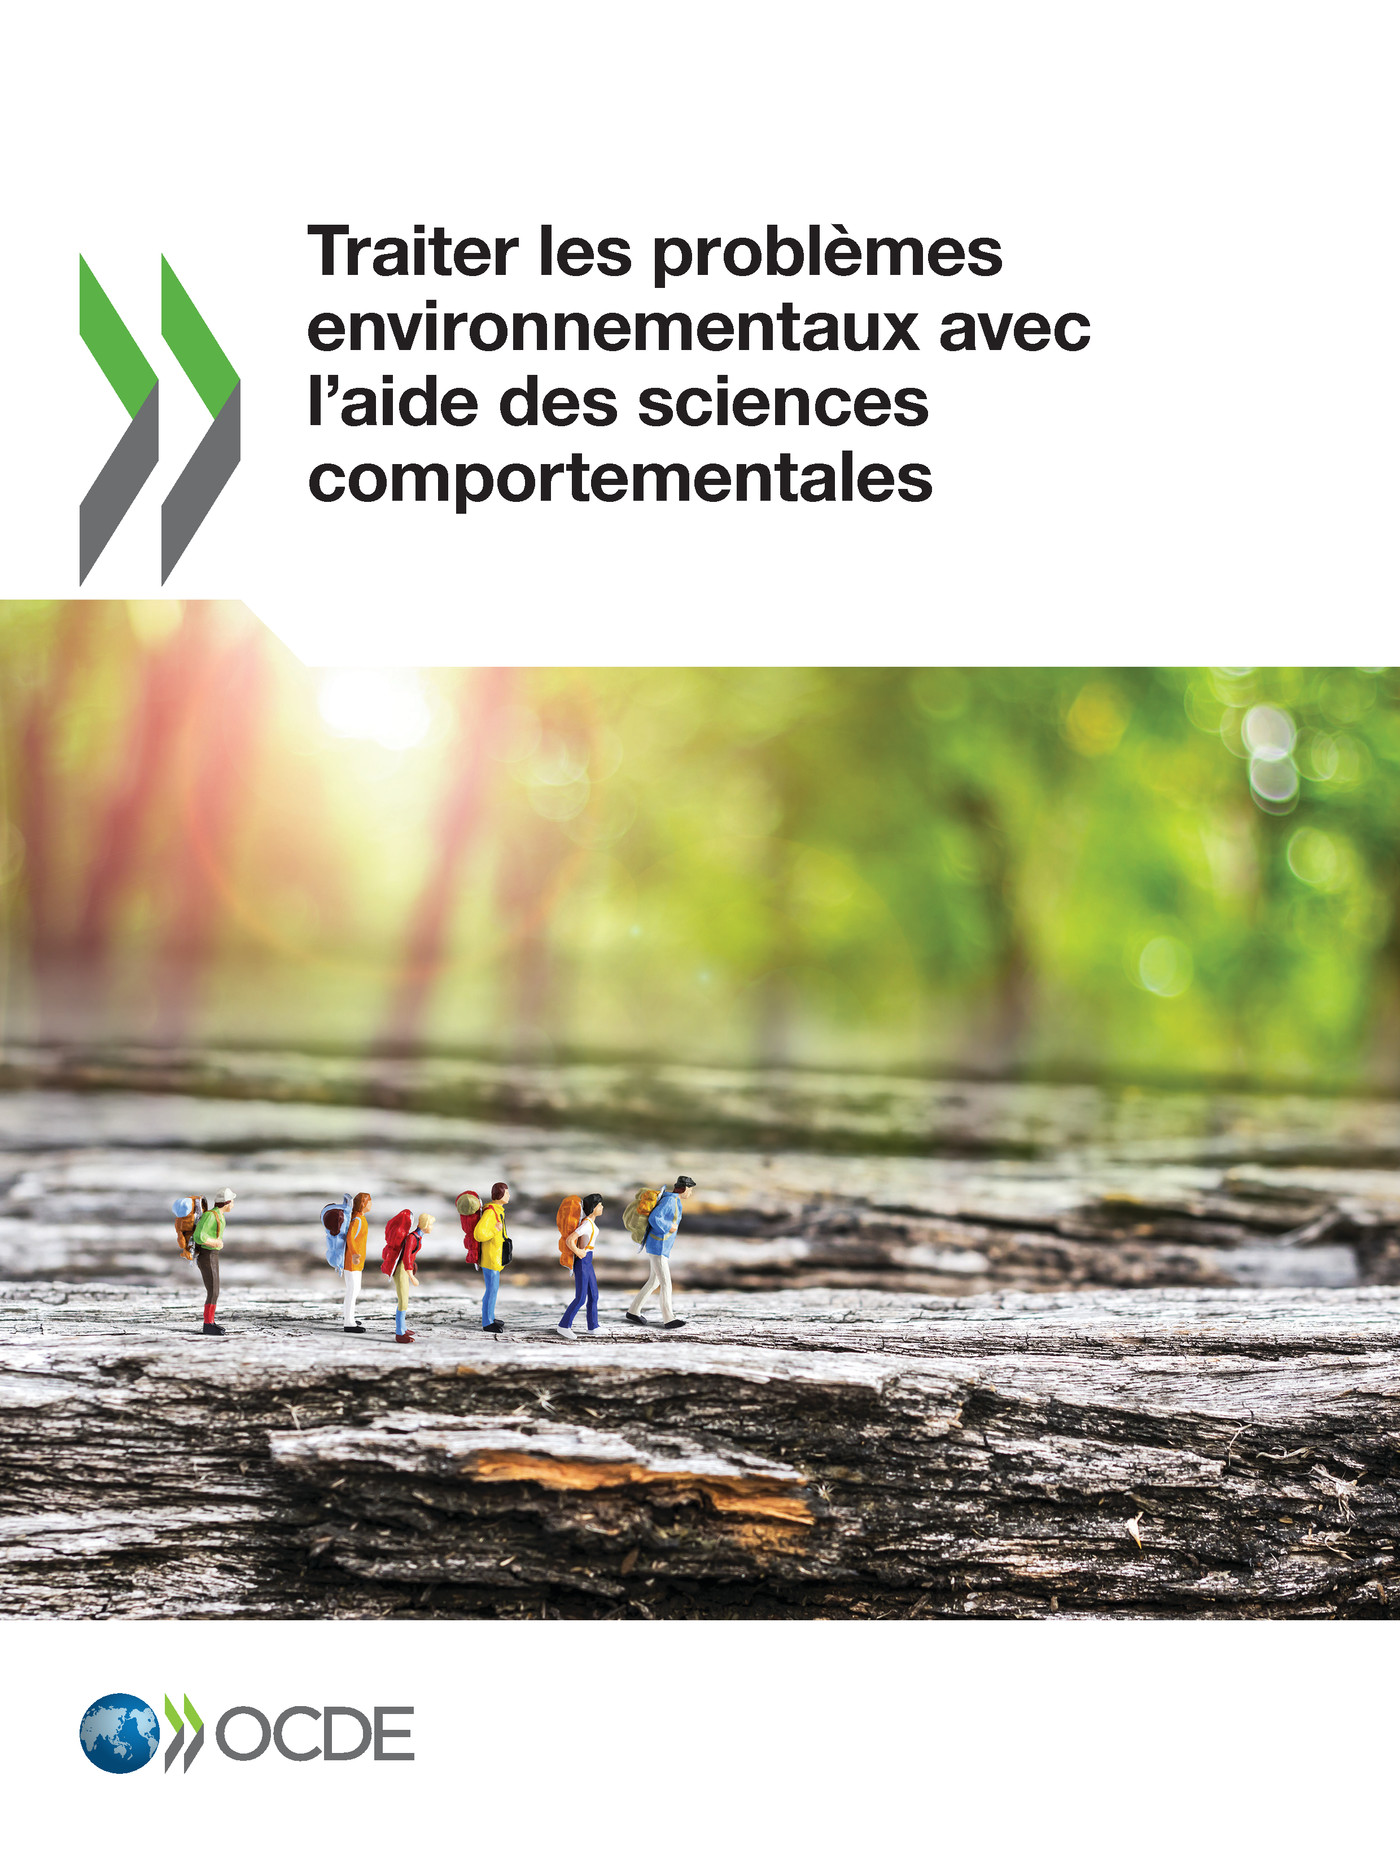 Traiter les problèmes environnementaux avec l'aide des sciences comportementales -  Collectif - OCDE / OECD